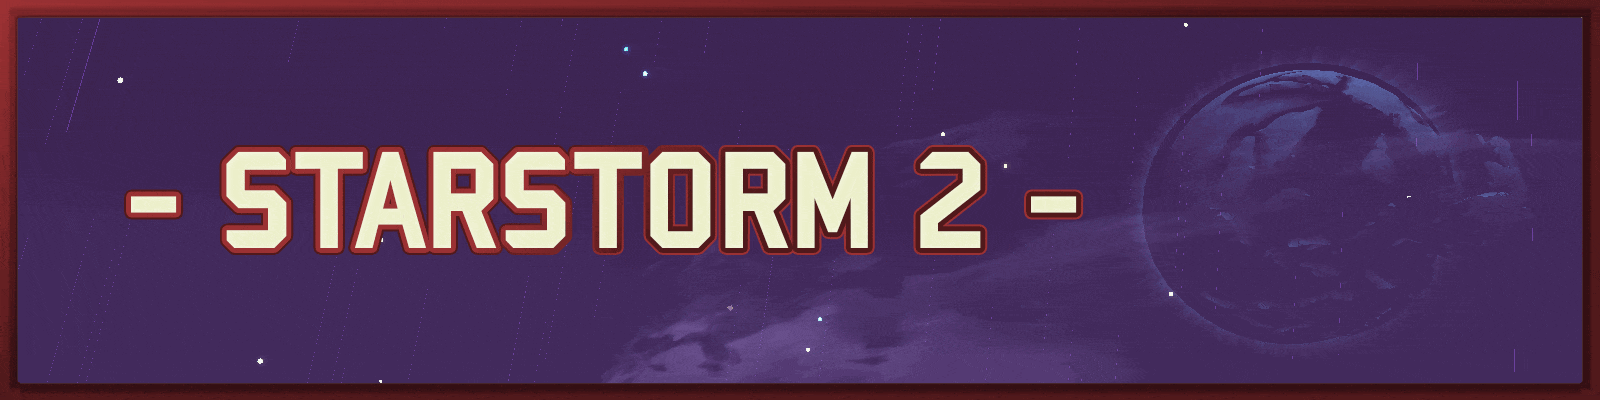 Starstorm 2